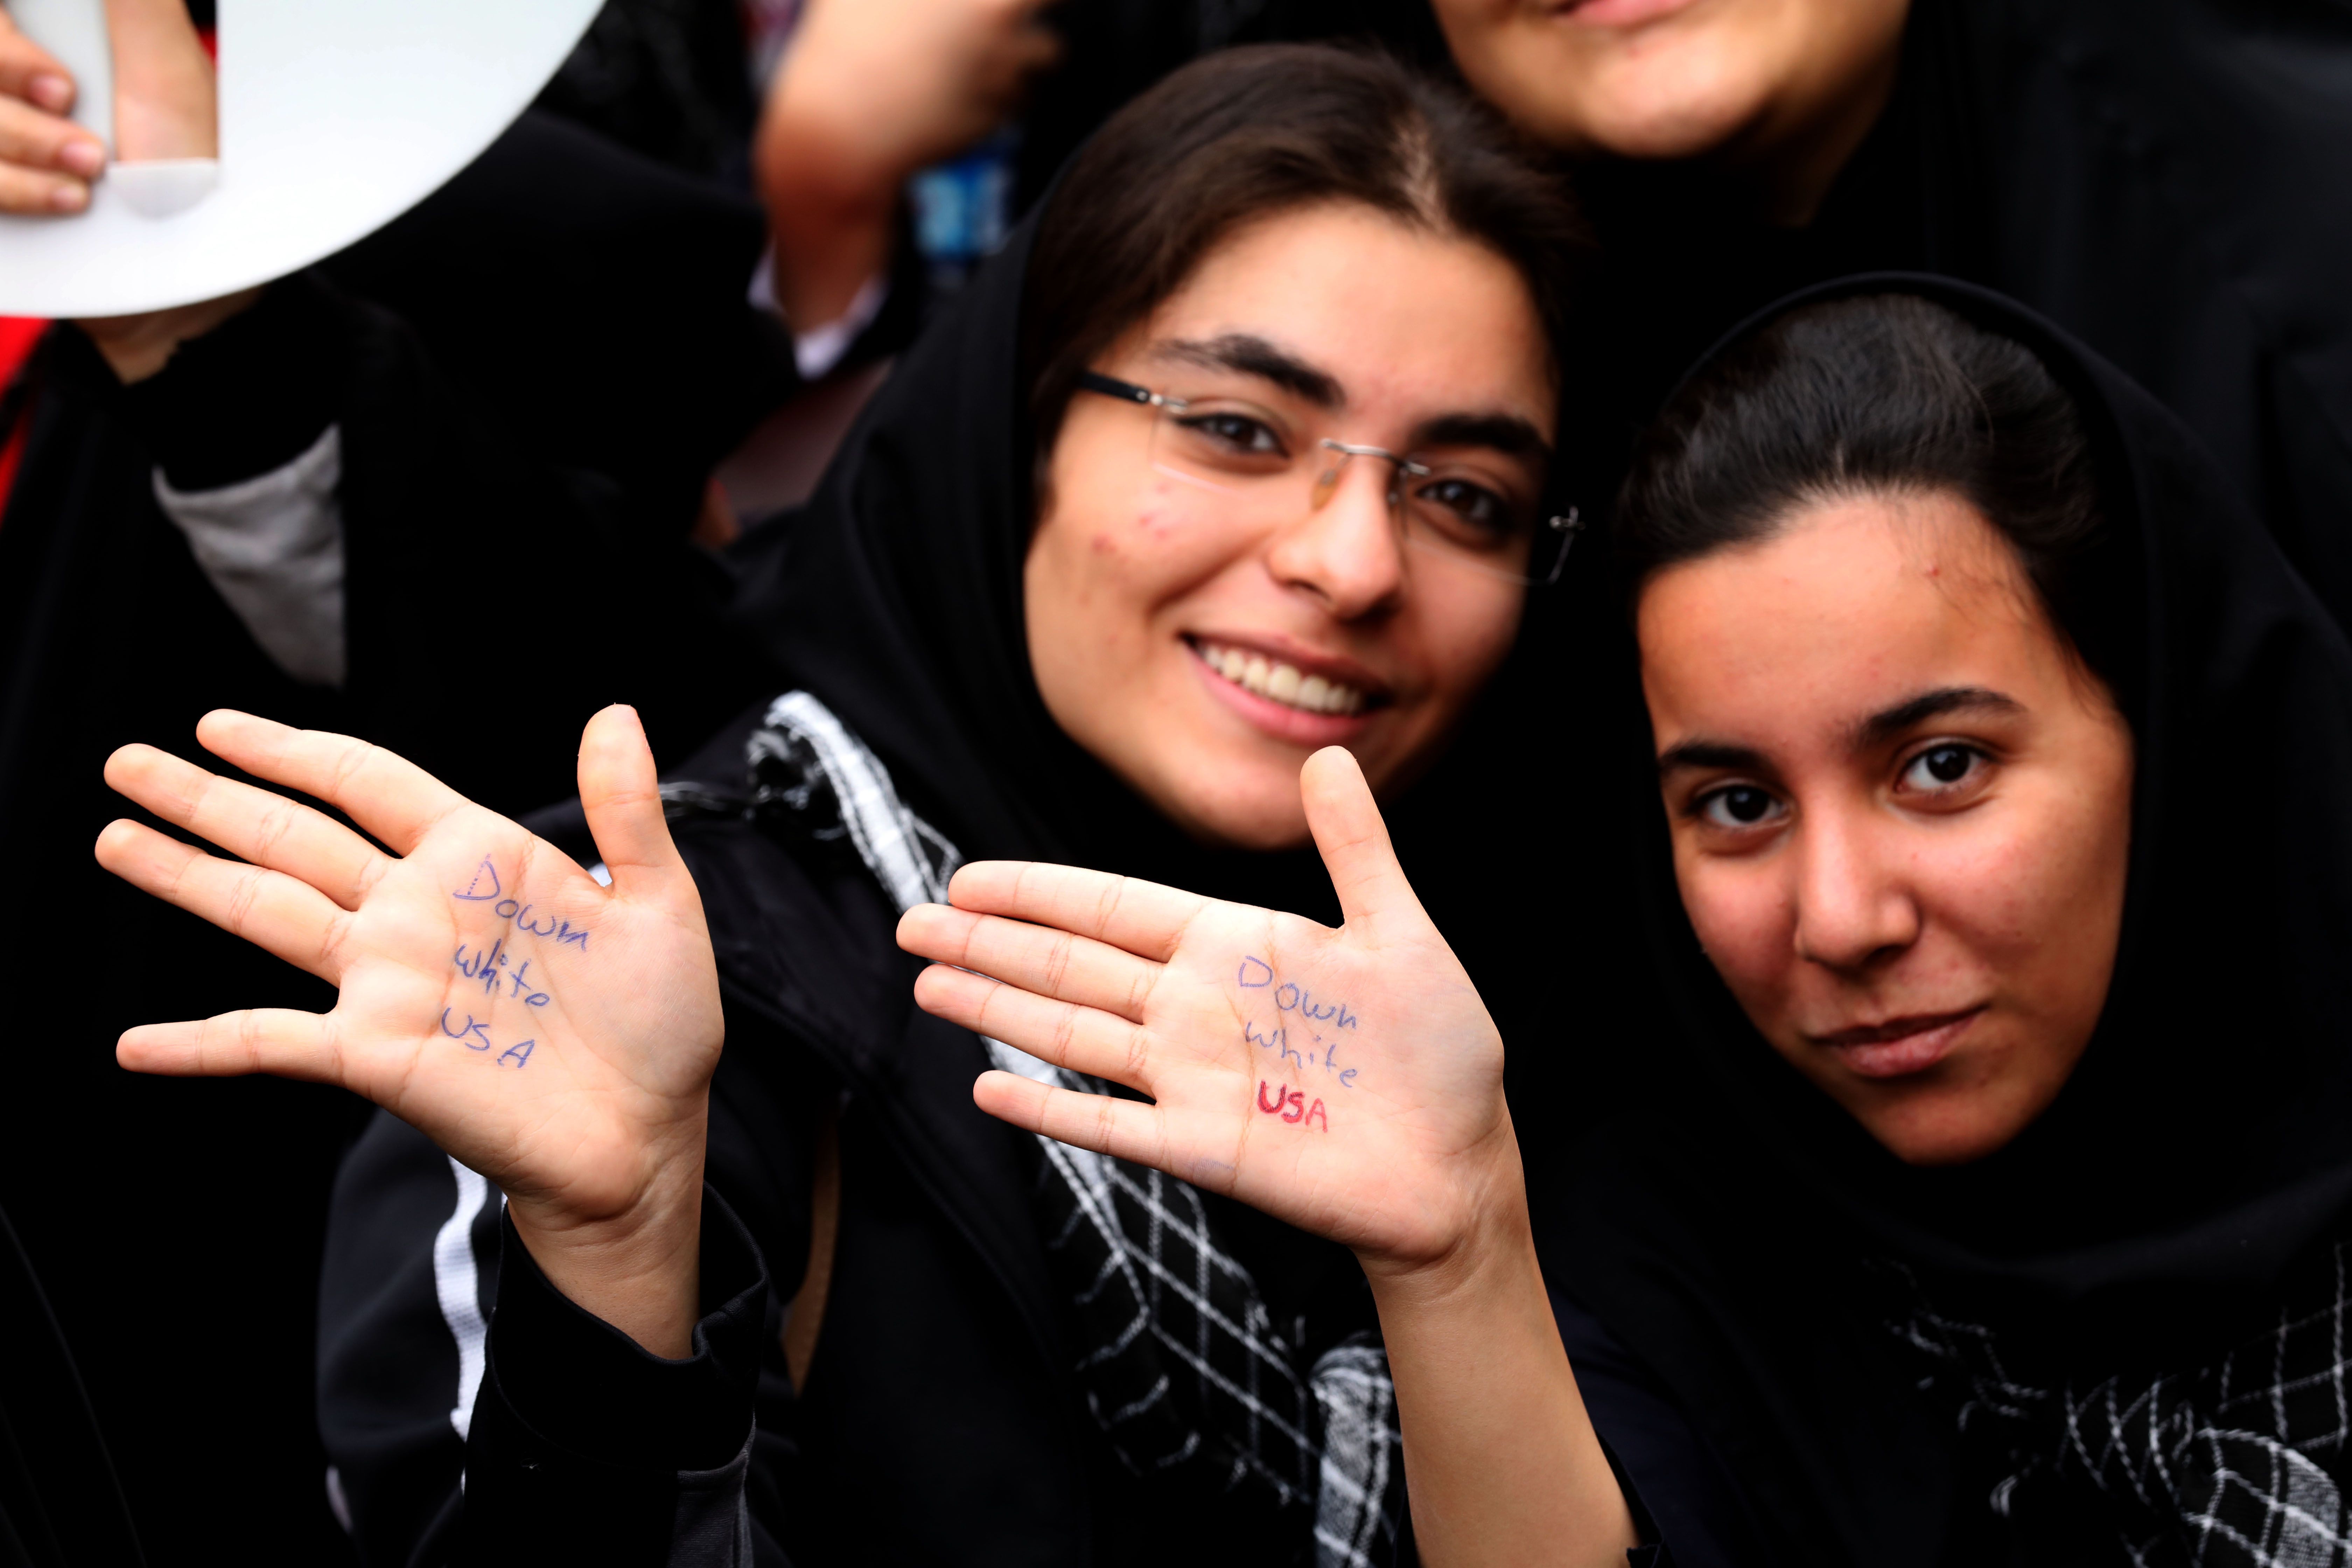 نساء إيران يكتبون عبارات مناهضة لأمريكا على أيديهم